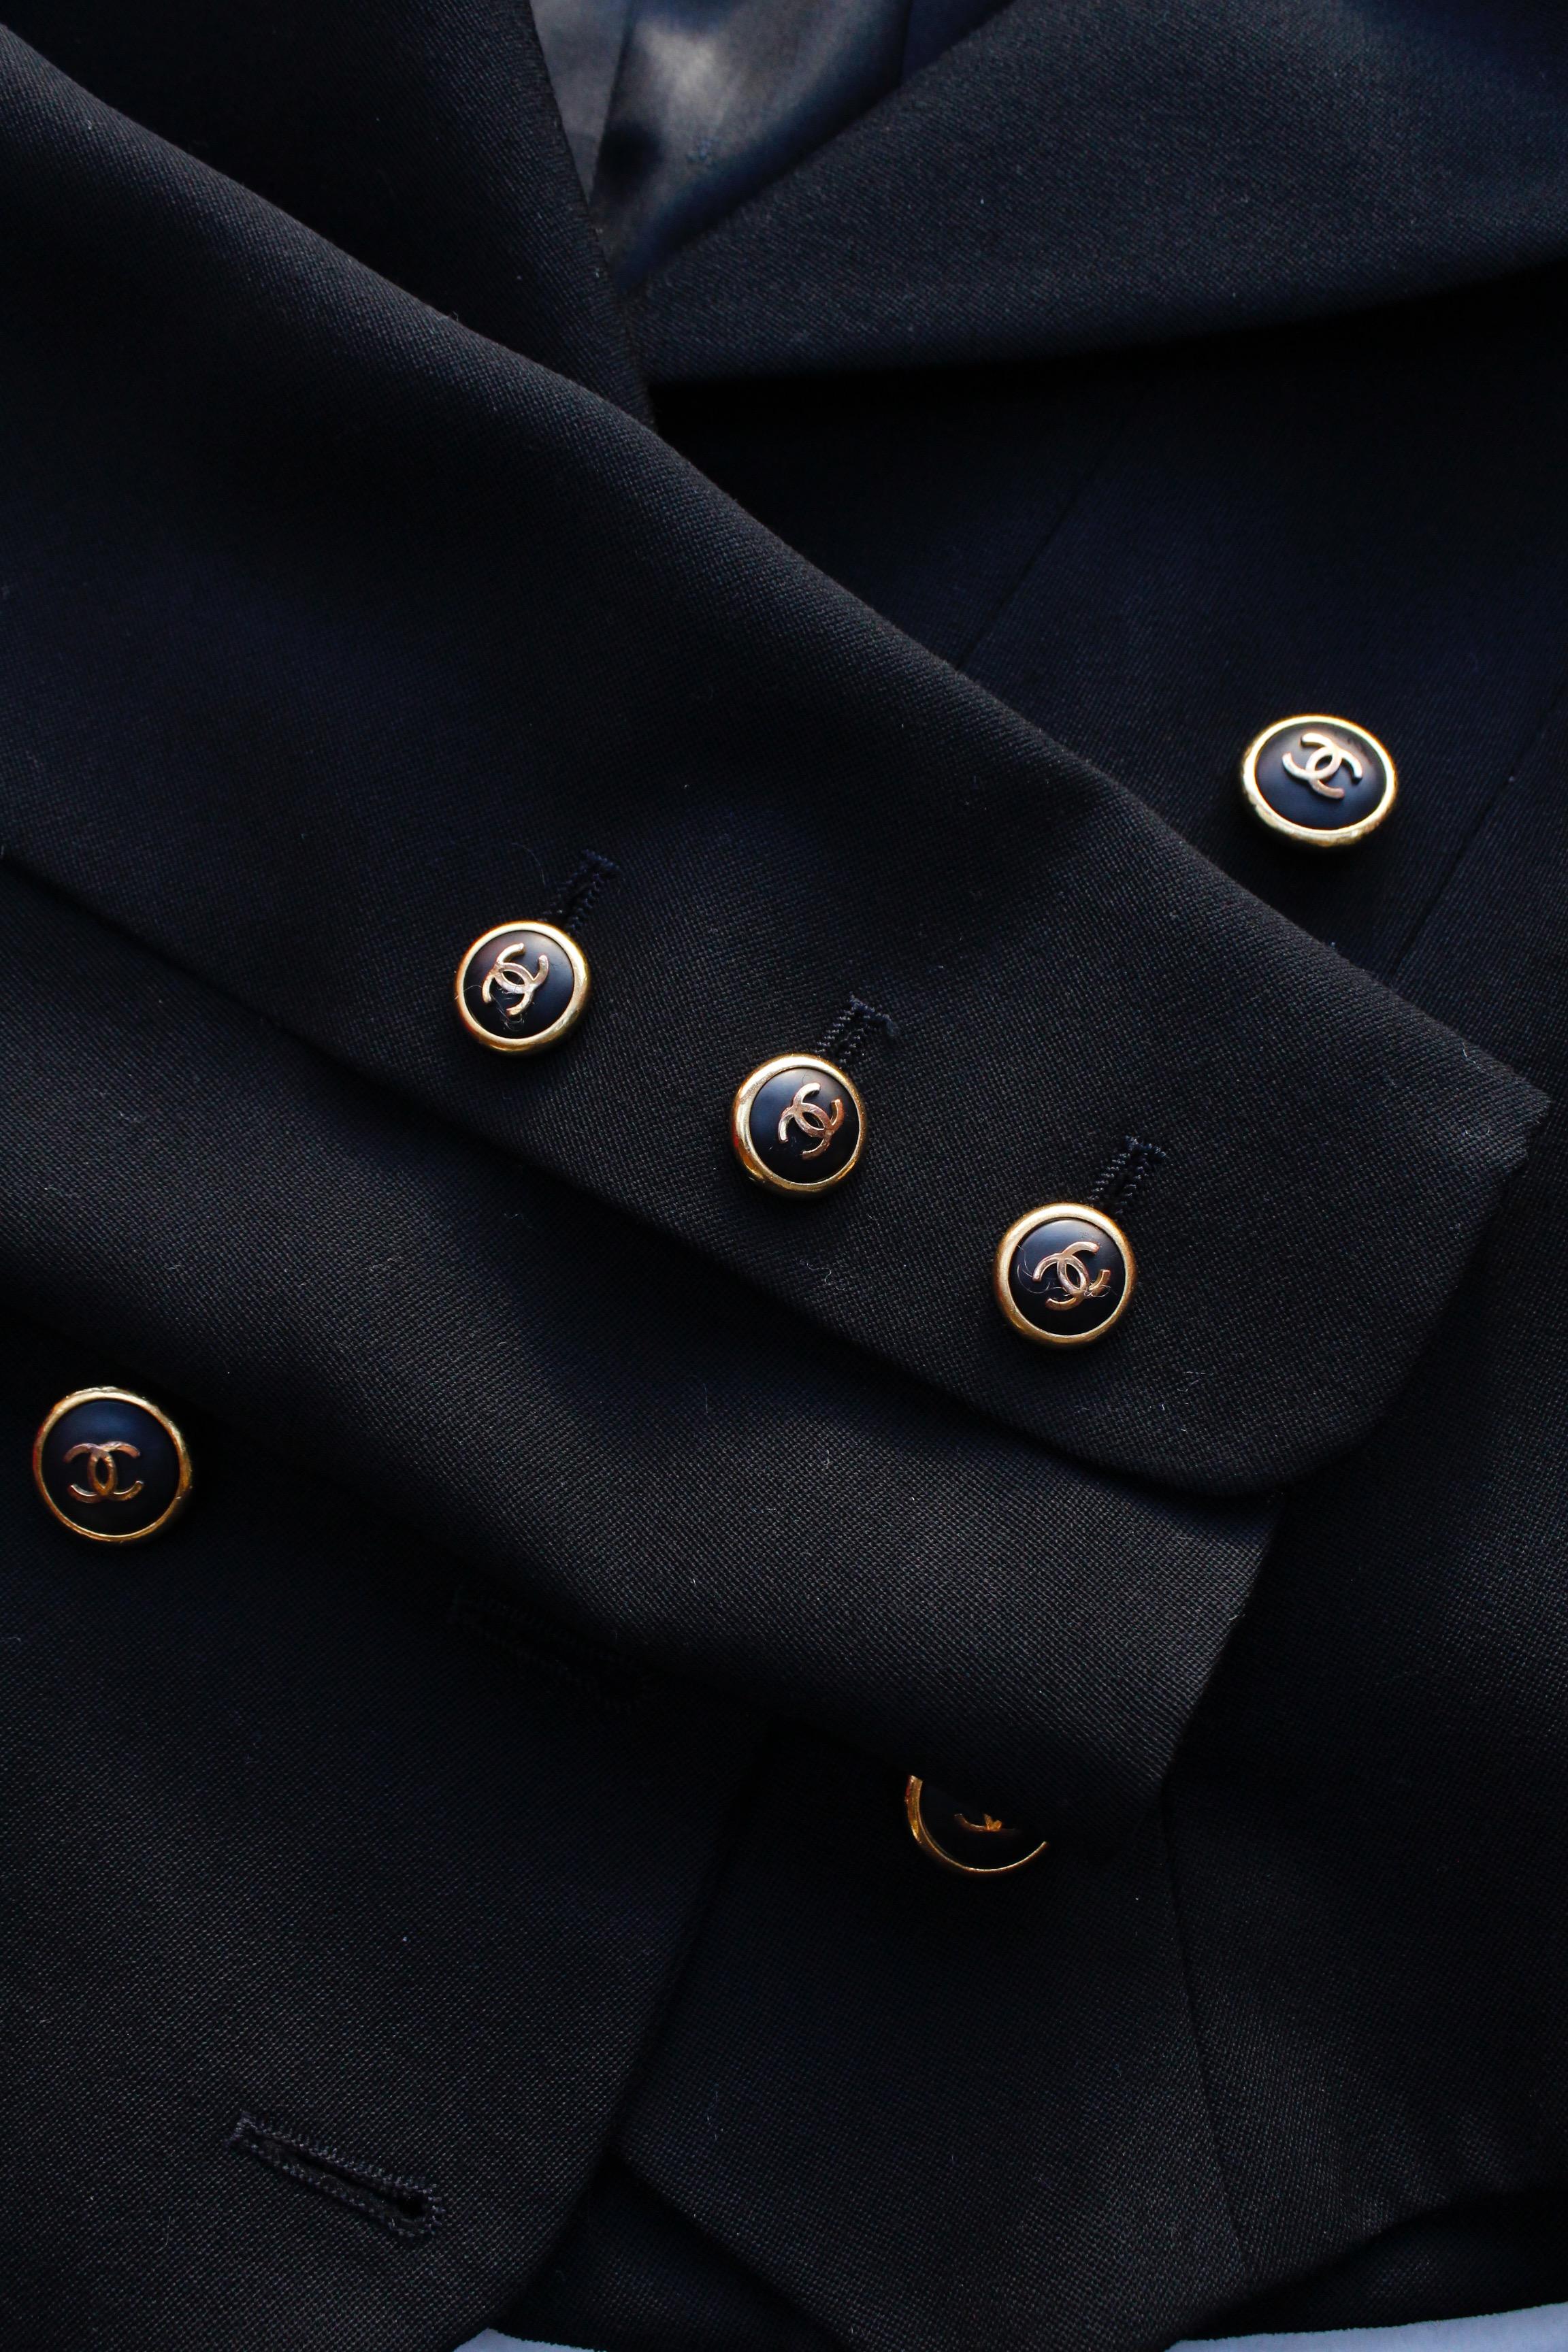 Women's Chanel black cotton short jacket, 1990’s   For Sale